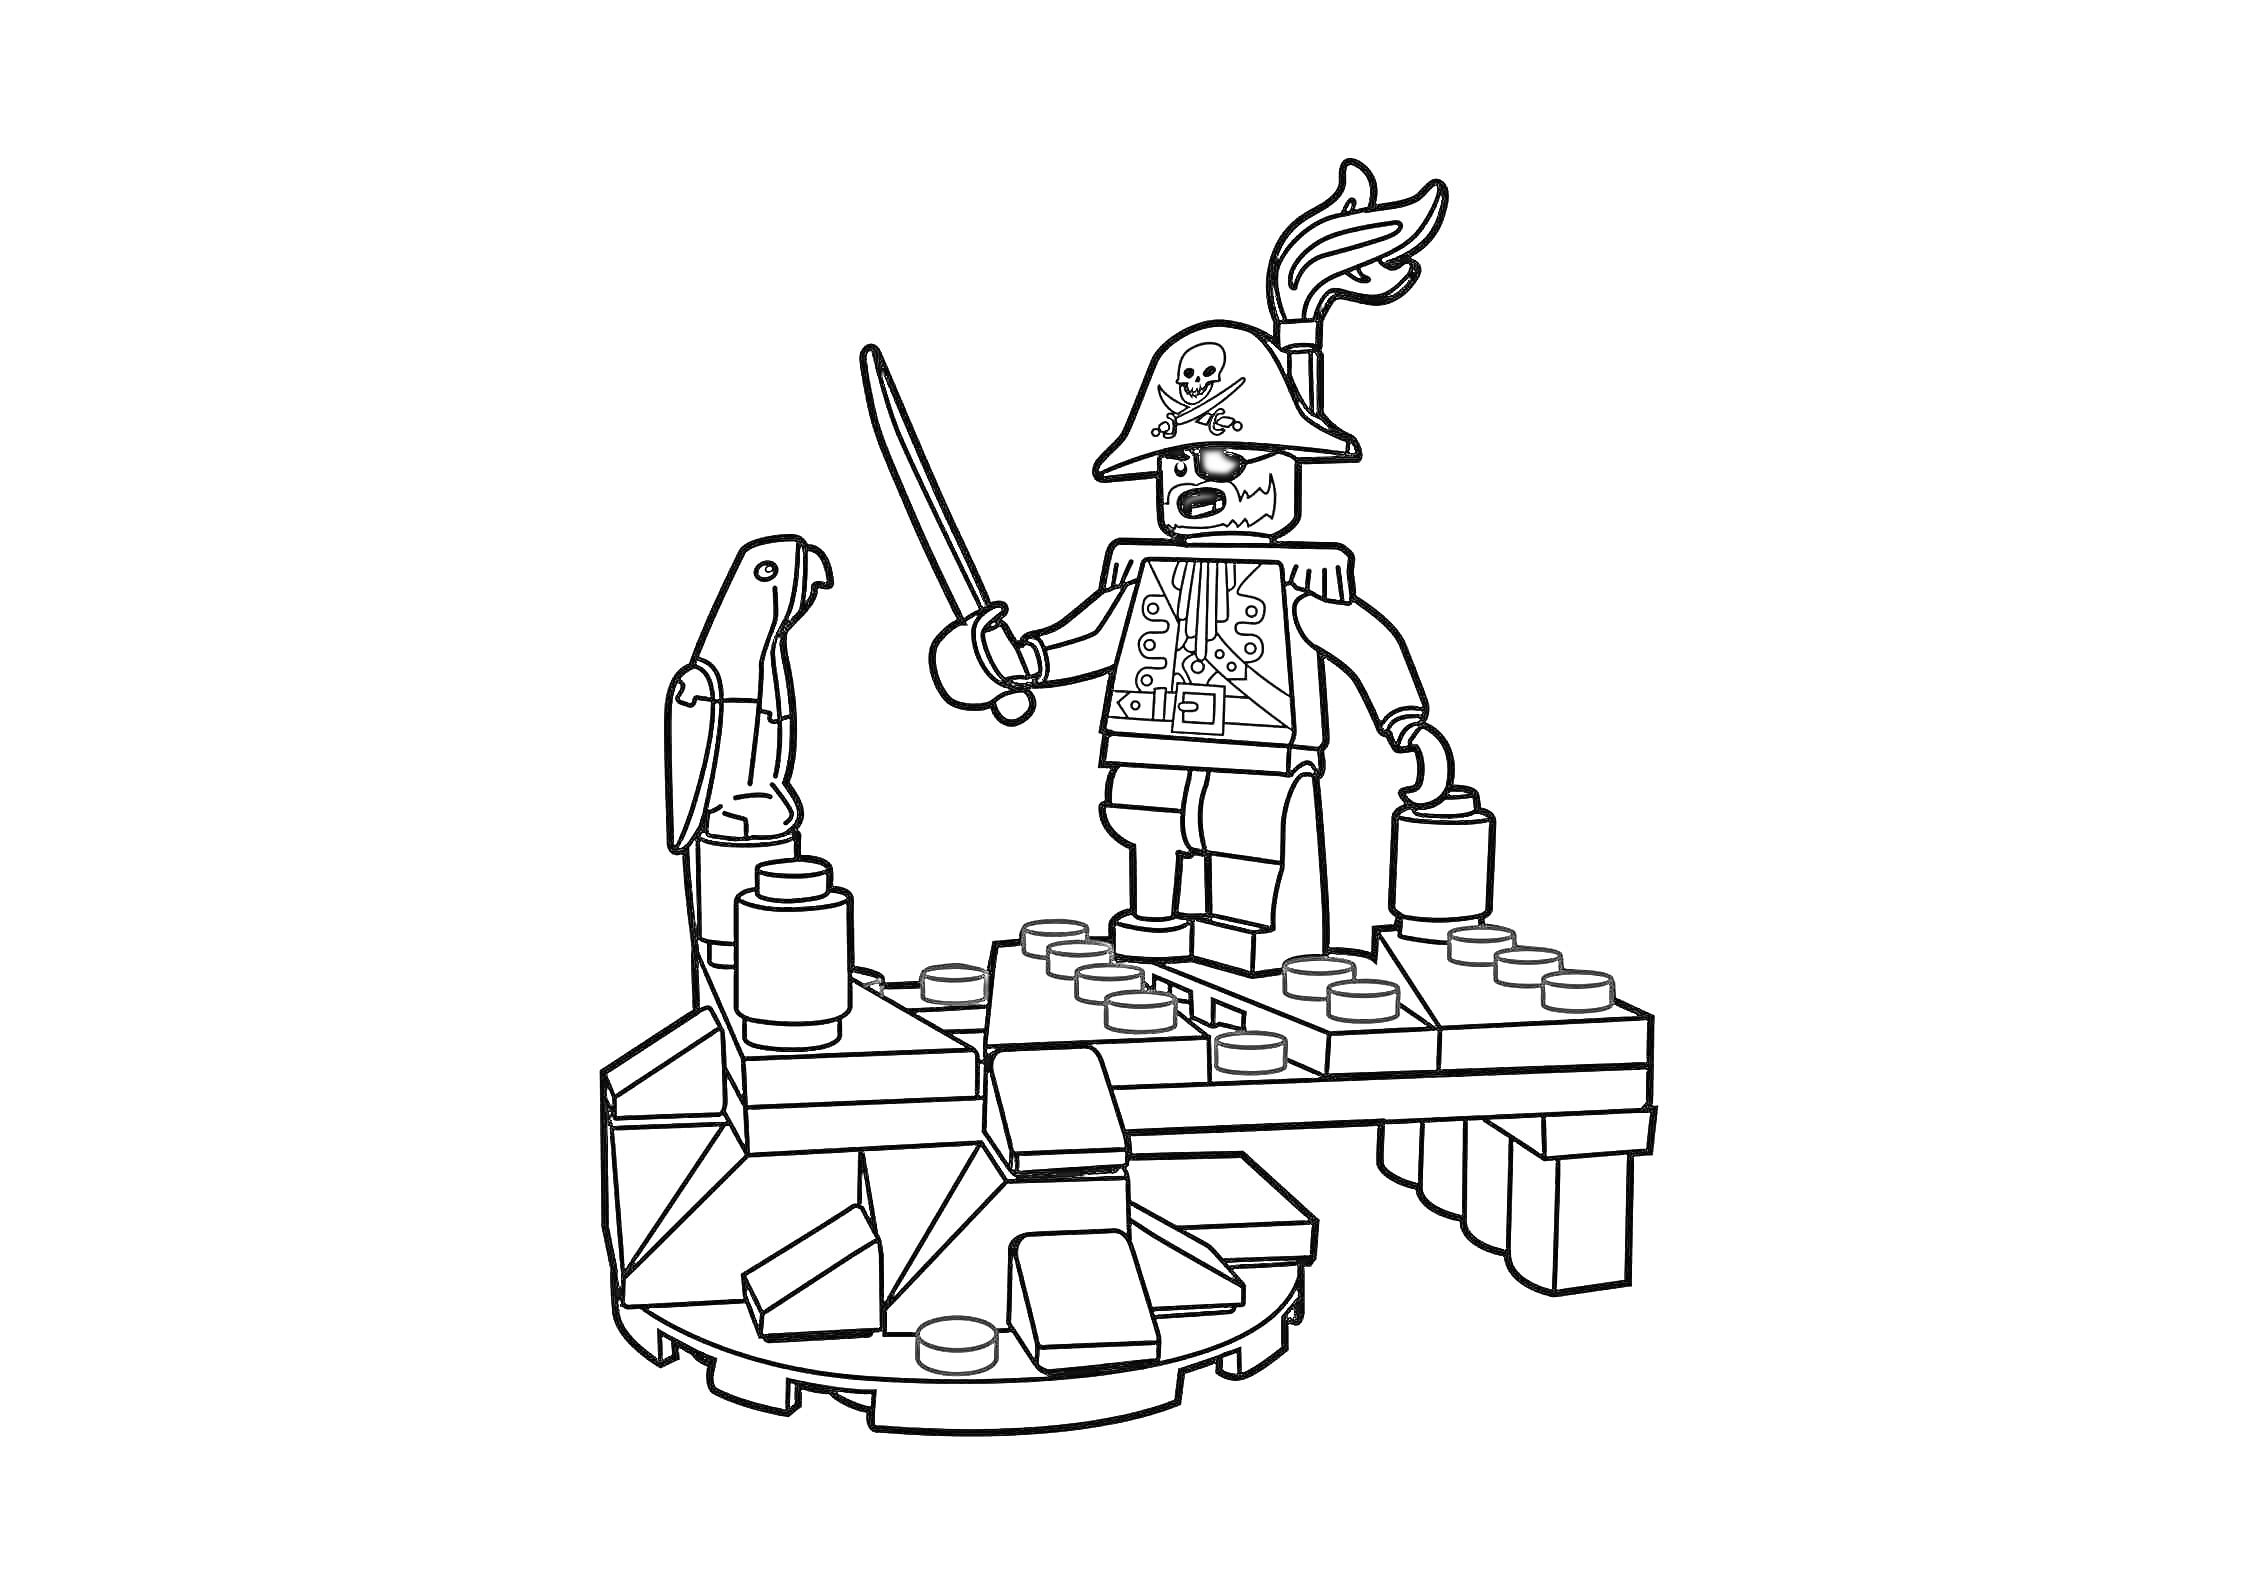 Раскраска Пират Лего с попугаем, мечом и сундуком на деревянной платформе